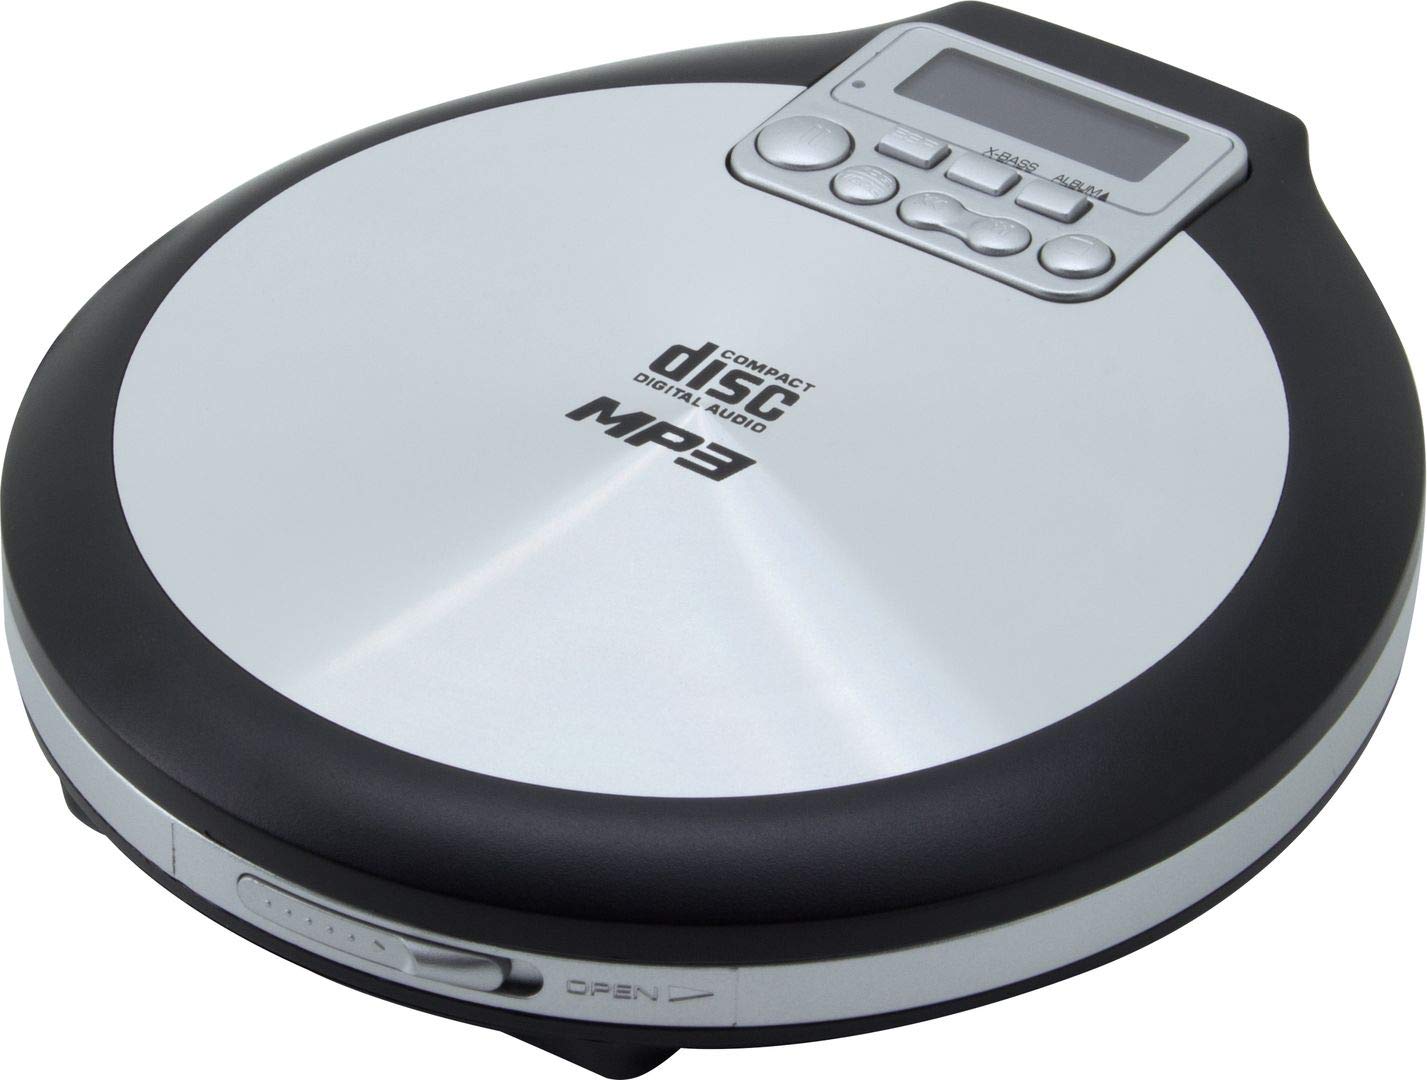 Audio & Hi-Fi Soundmaster: CD9220 Portable Dab+/Cd/Mp3-Player With Rechargeable Battery (Lettore Cd Portatile) NUOVO SIGILLATO, EDIZIONE DEL 17/01/2019 SUBITO DISPONIBILE